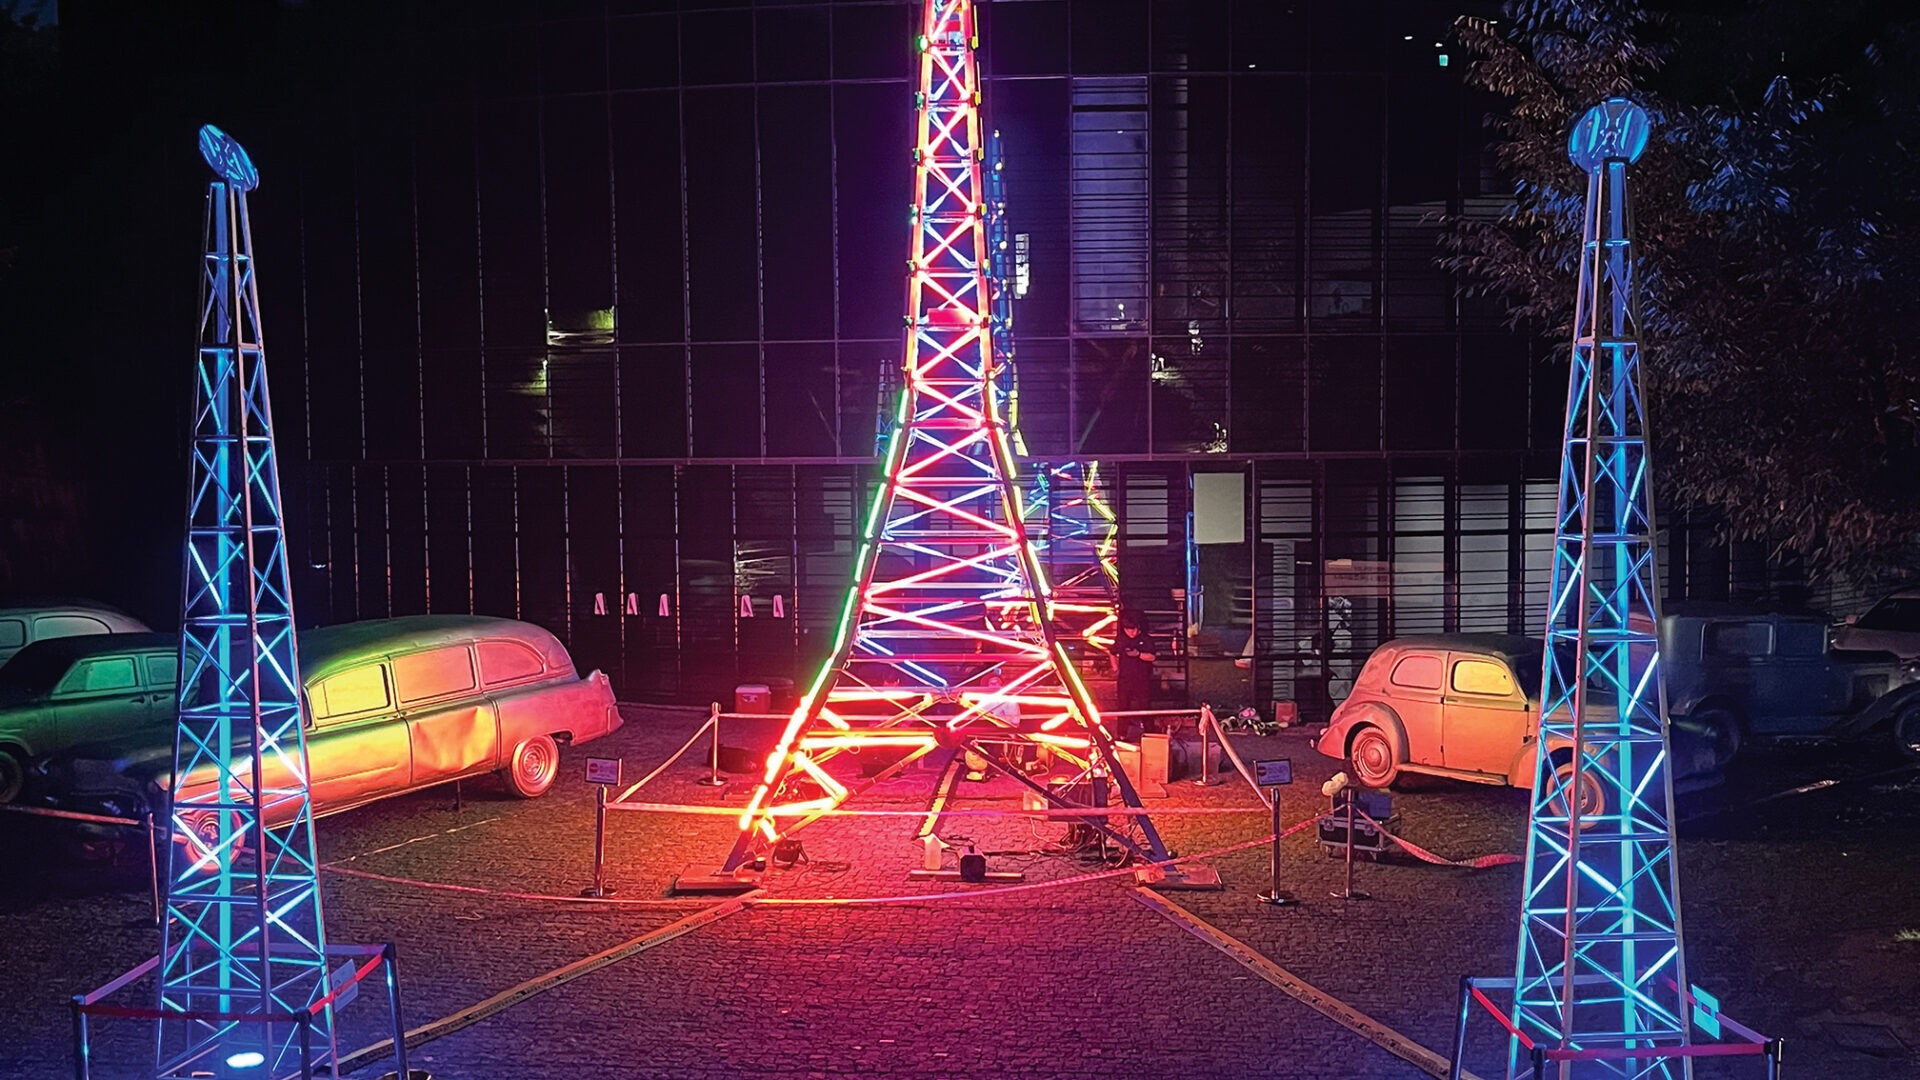 백남준의 ‘트랜스미션 타워’ 한국 최초로 전시한다